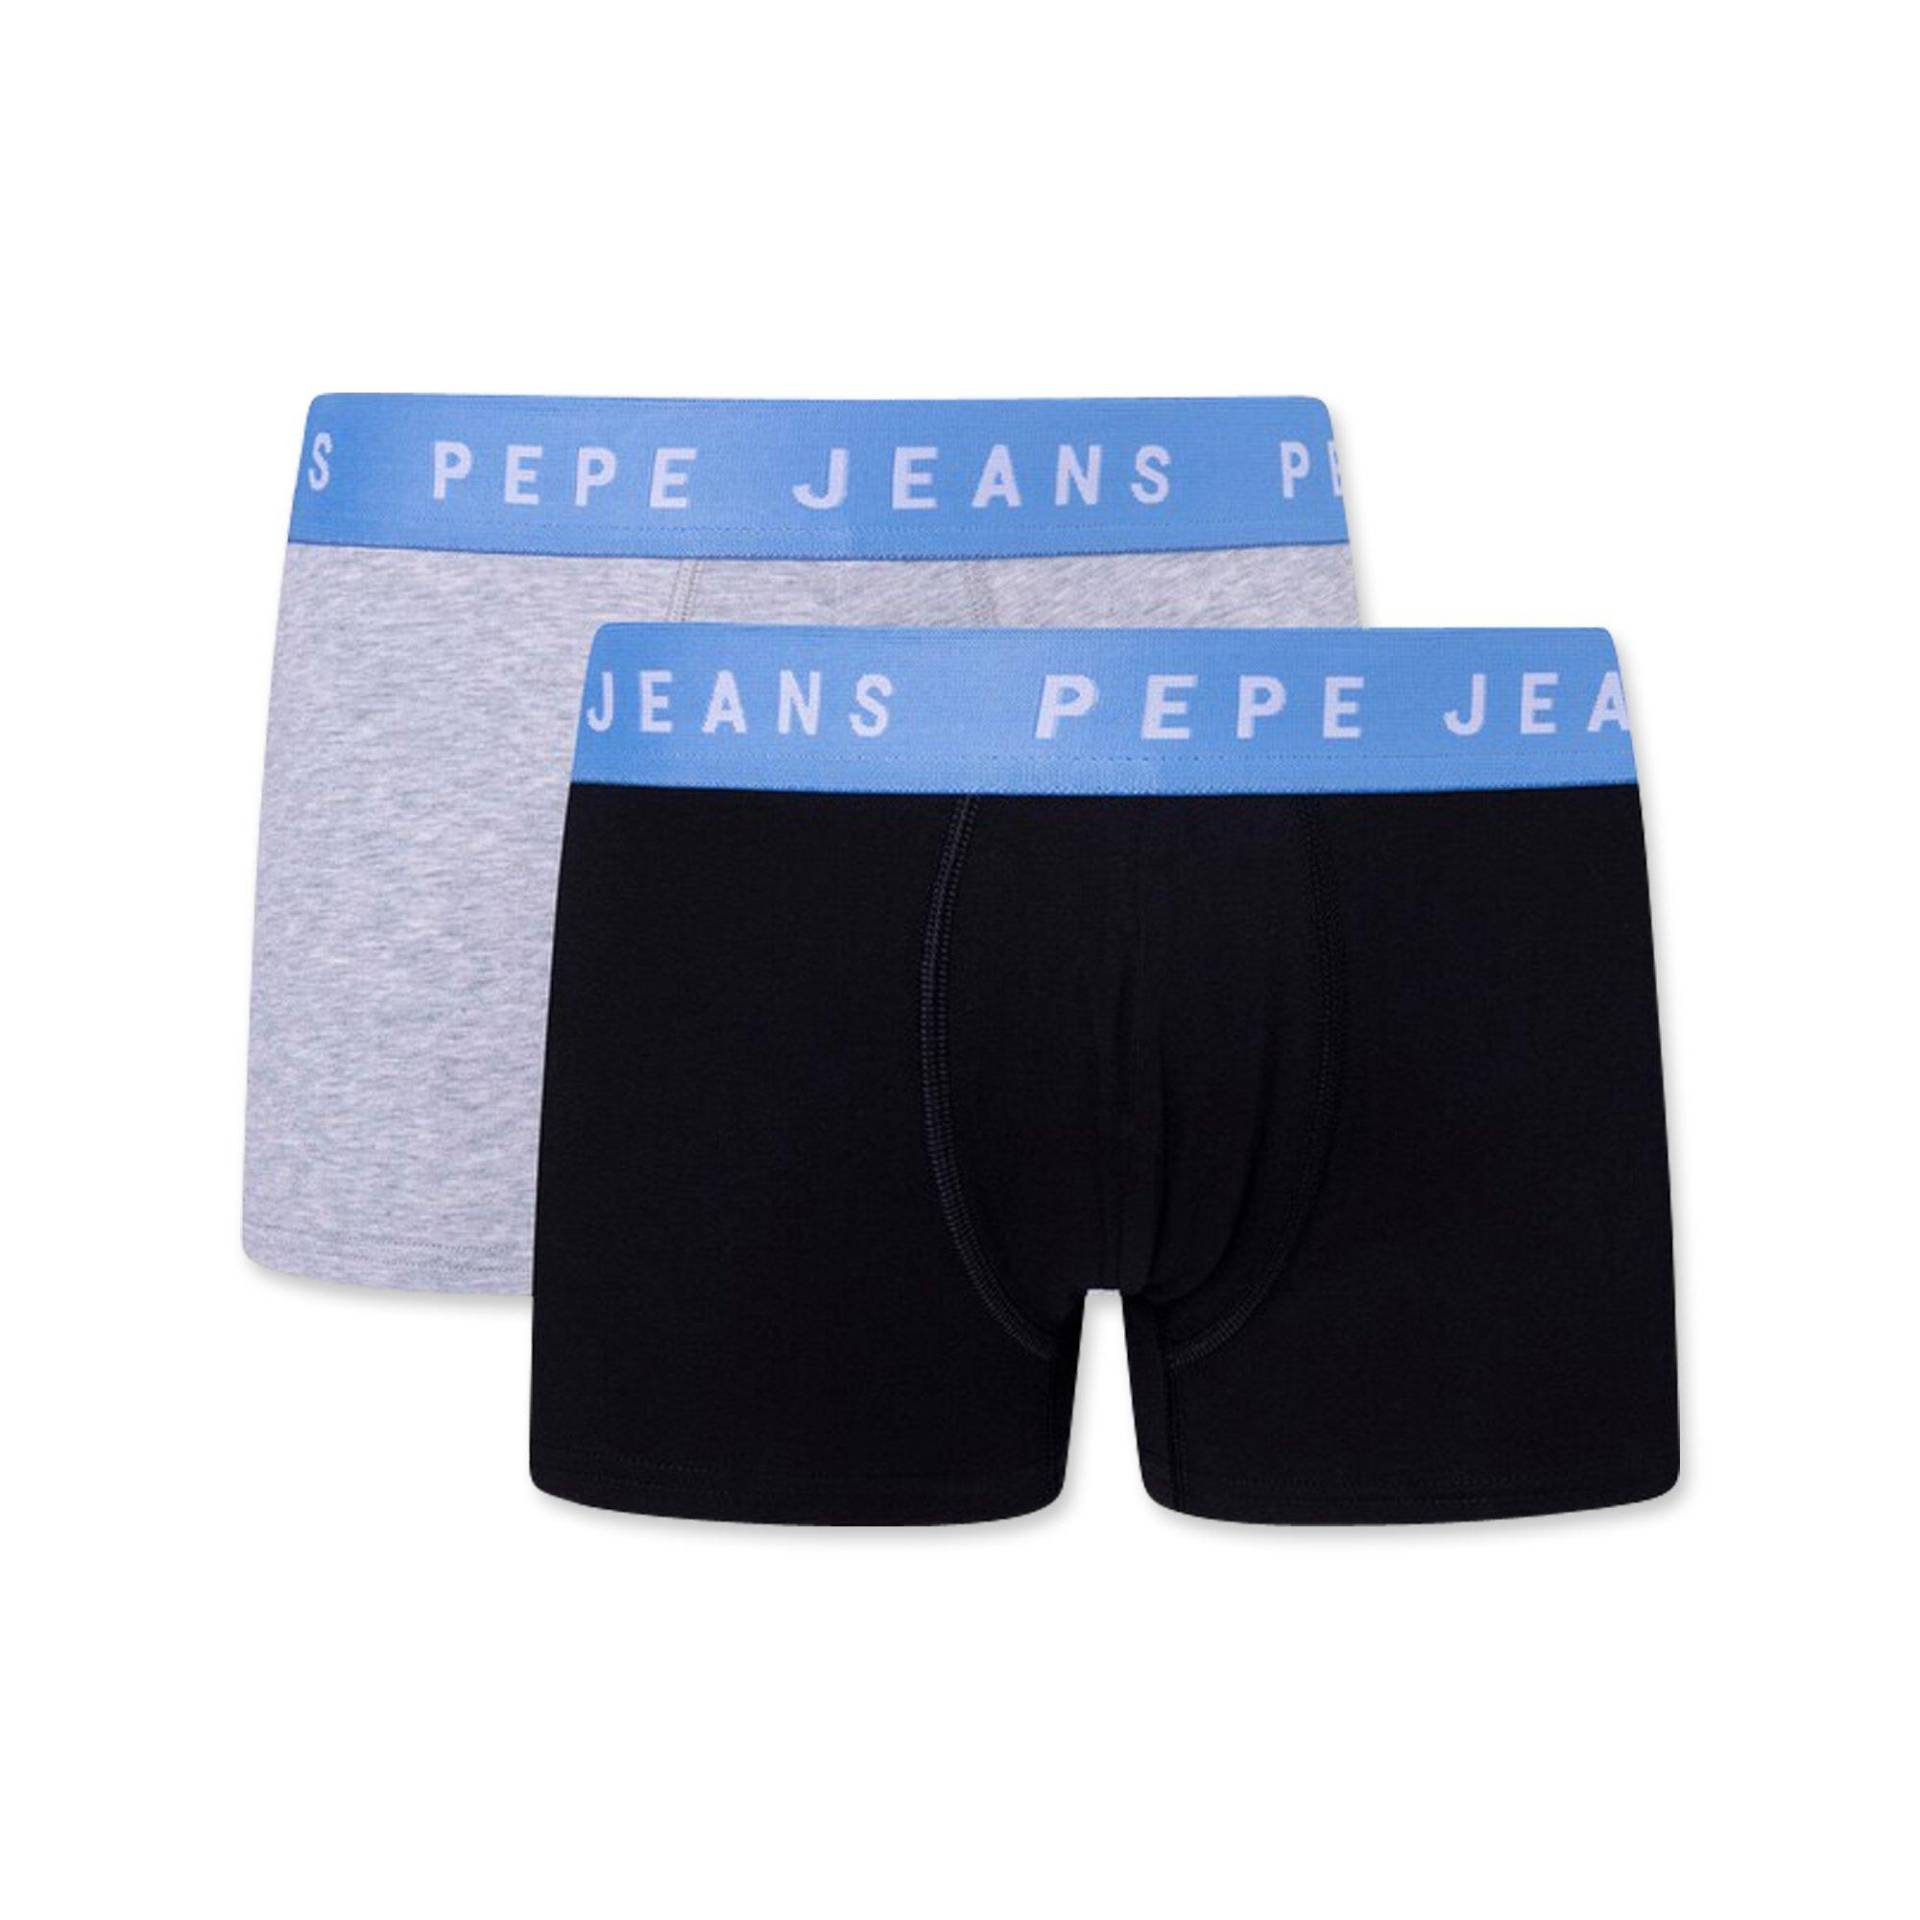 Duopack, Pantys Herren Black S von Pepe Jeans